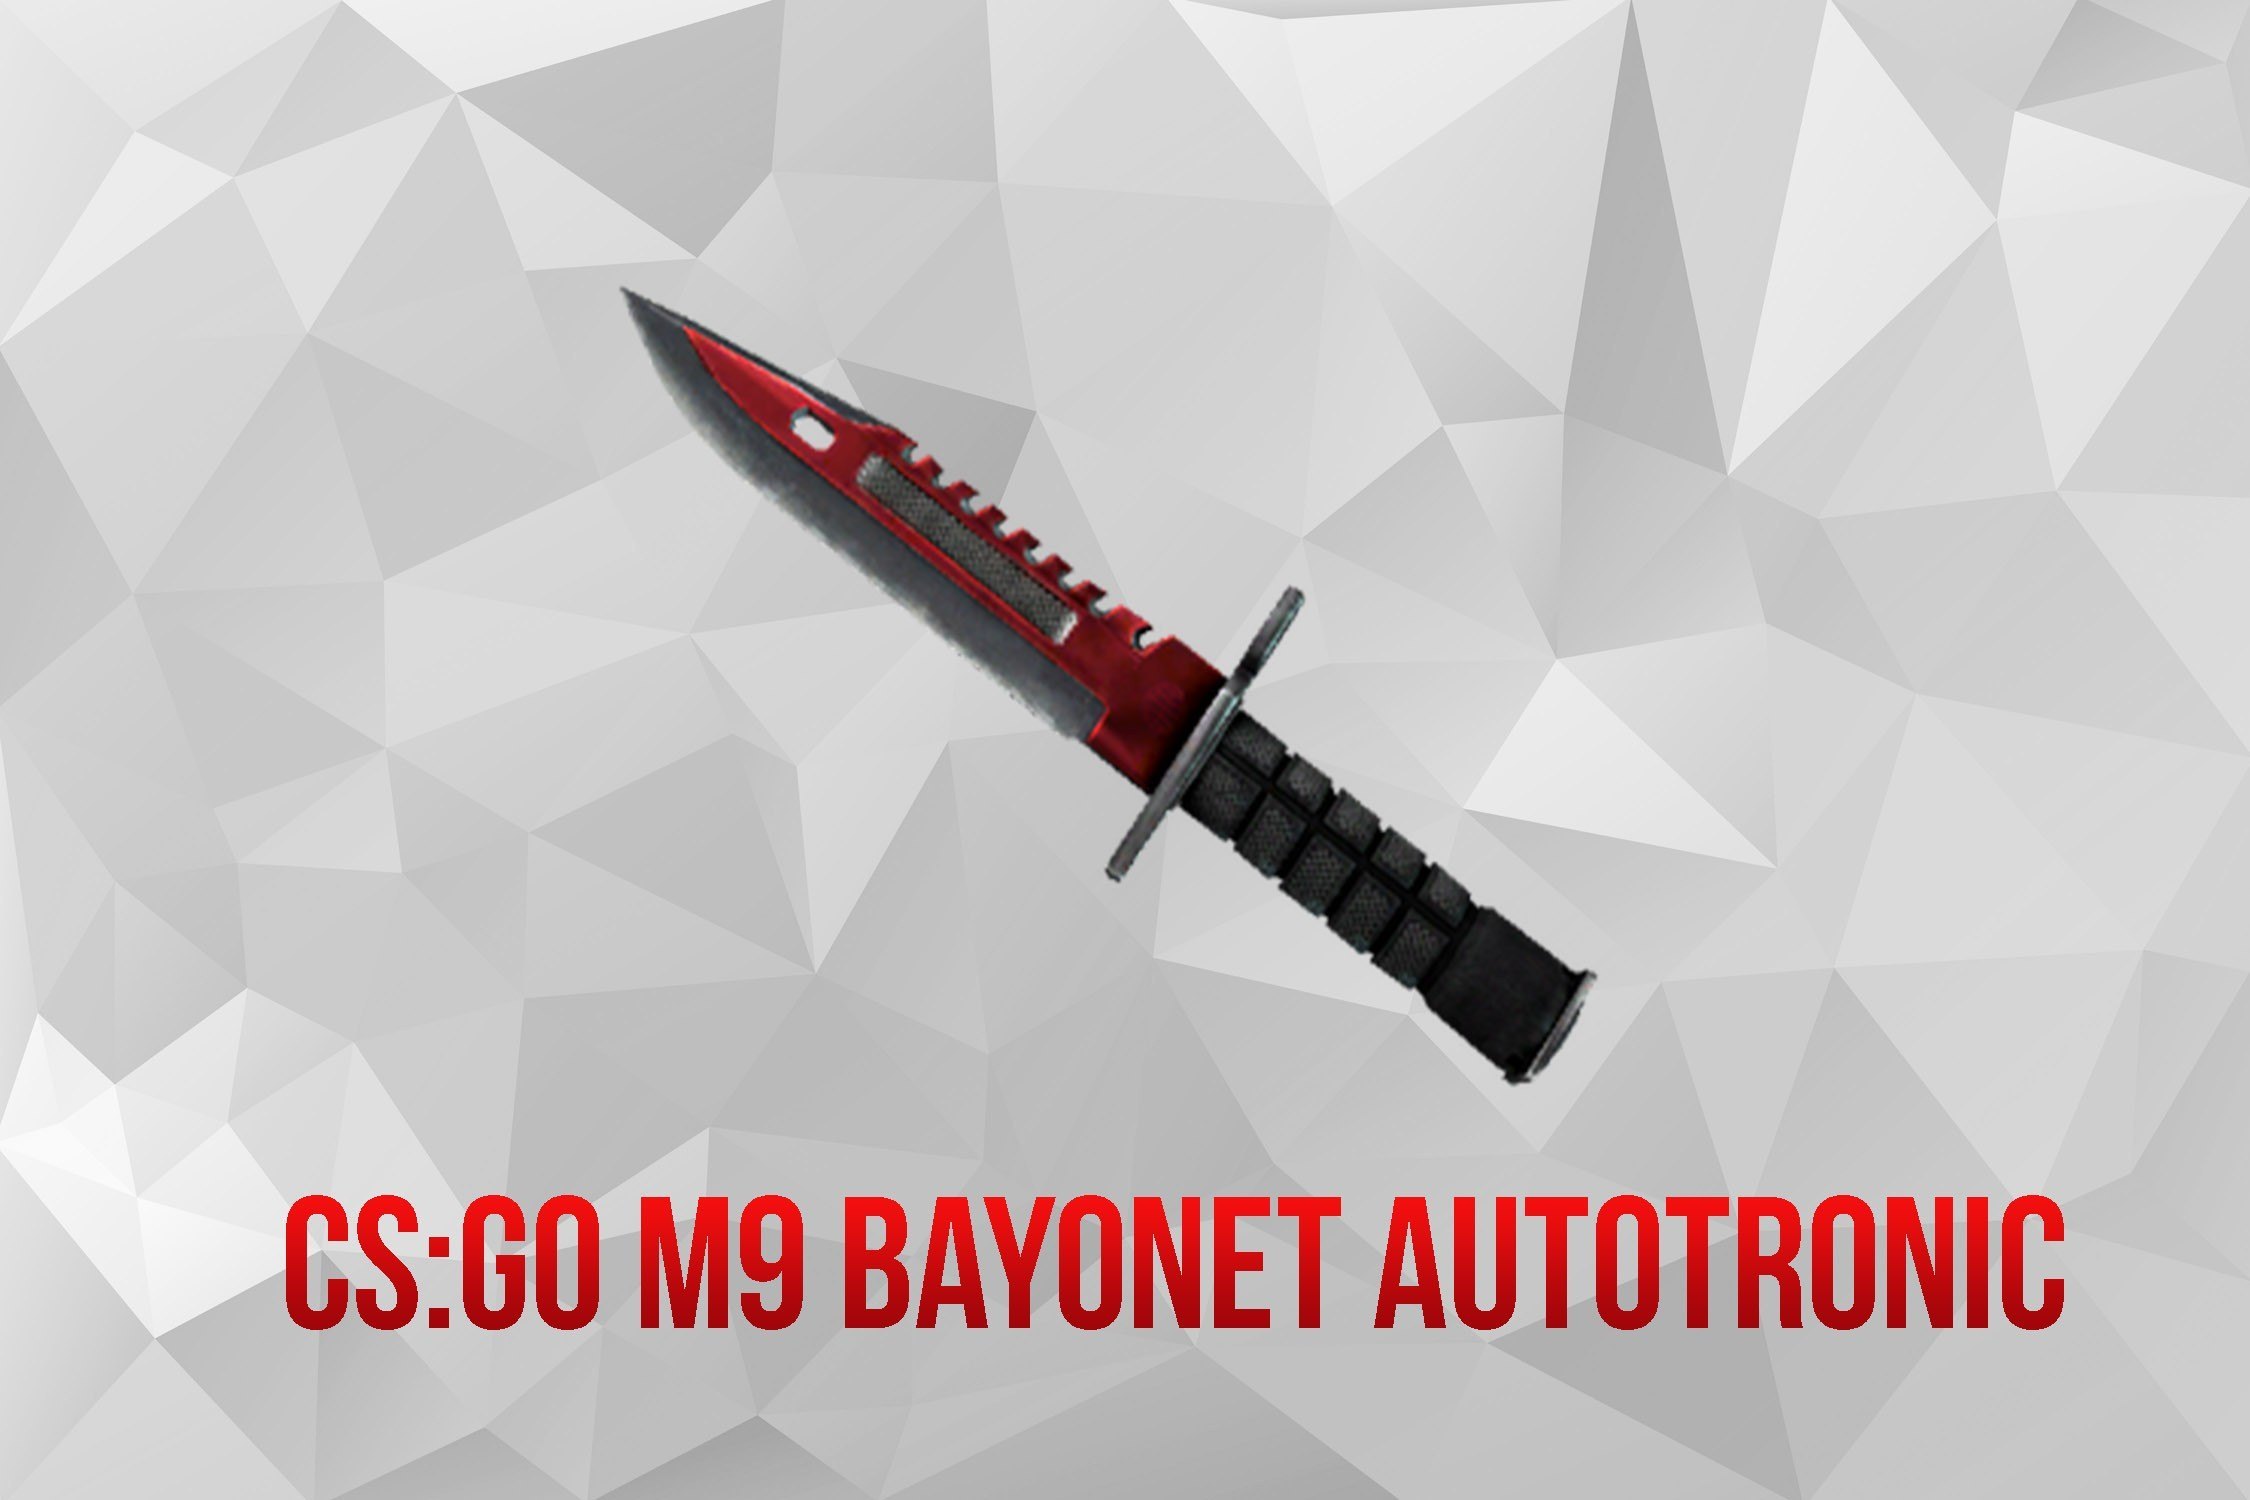 M9 Автотроника. Bayonet Autotronic. Нож Боуи Автотроника. Штык нож Автотроника. Сервера кс 1.6 ножи